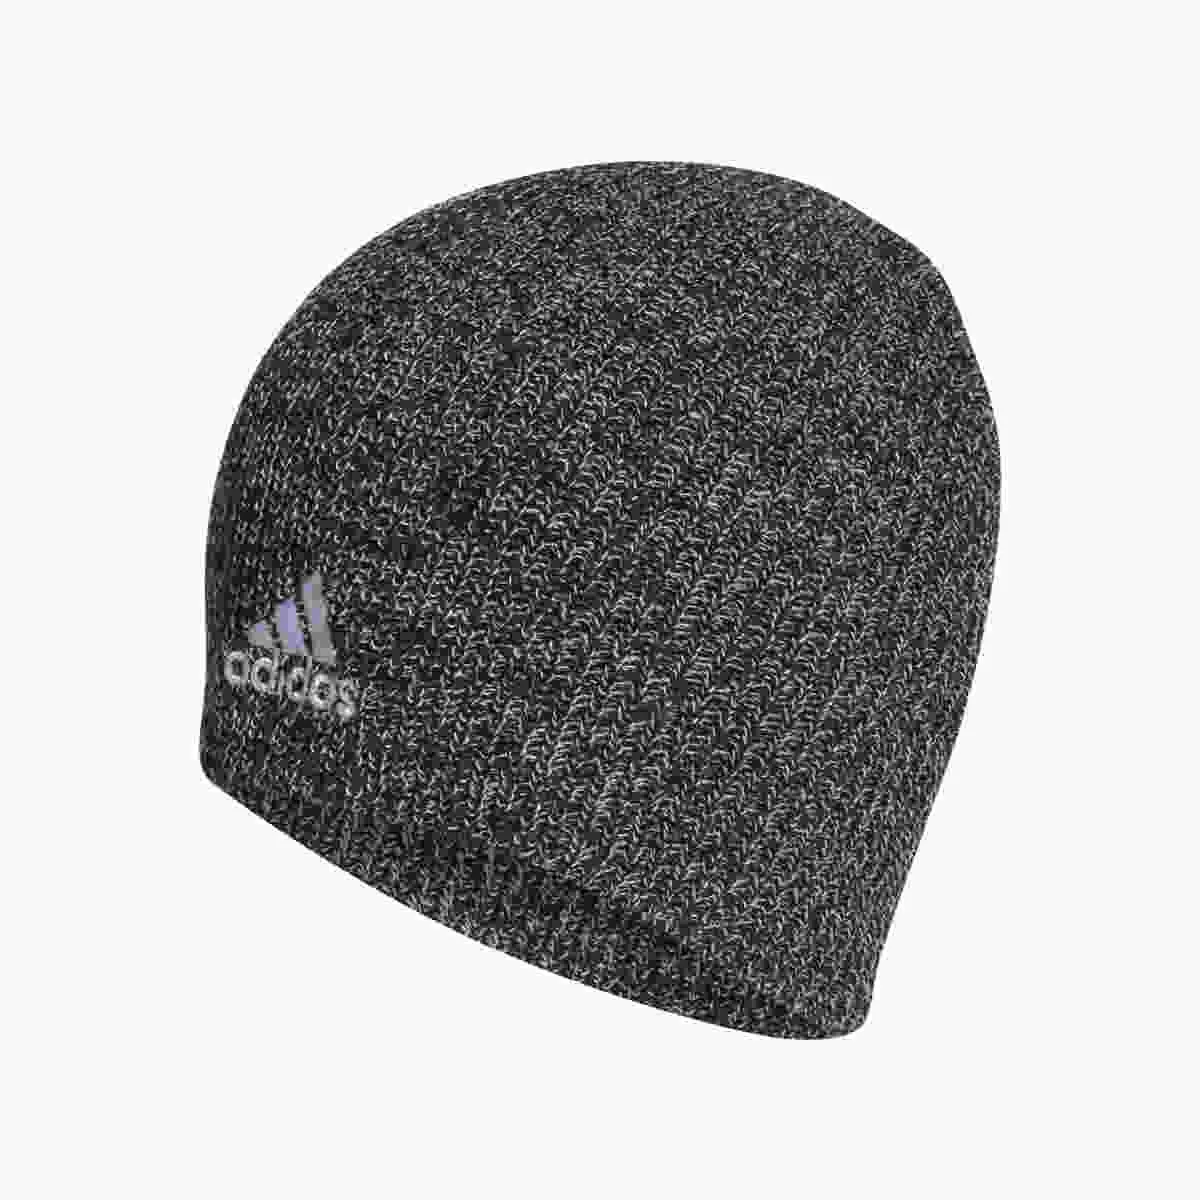 adidas knitted hat grey mottled size OSFM 652-adiHG7787